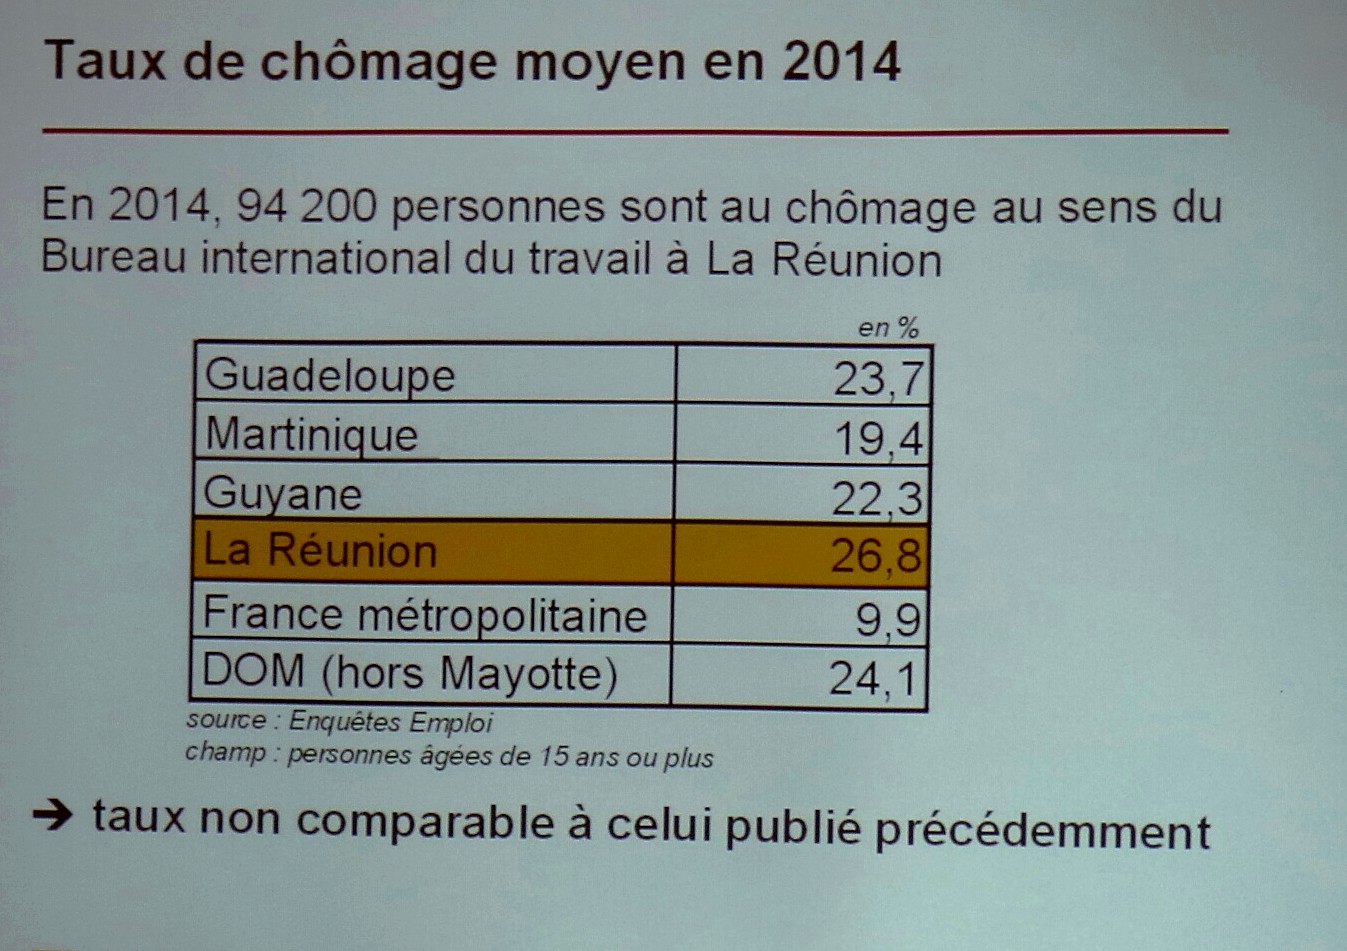 26,8% de chômage à la Réunion en 2014, selon la nouvelle méthode